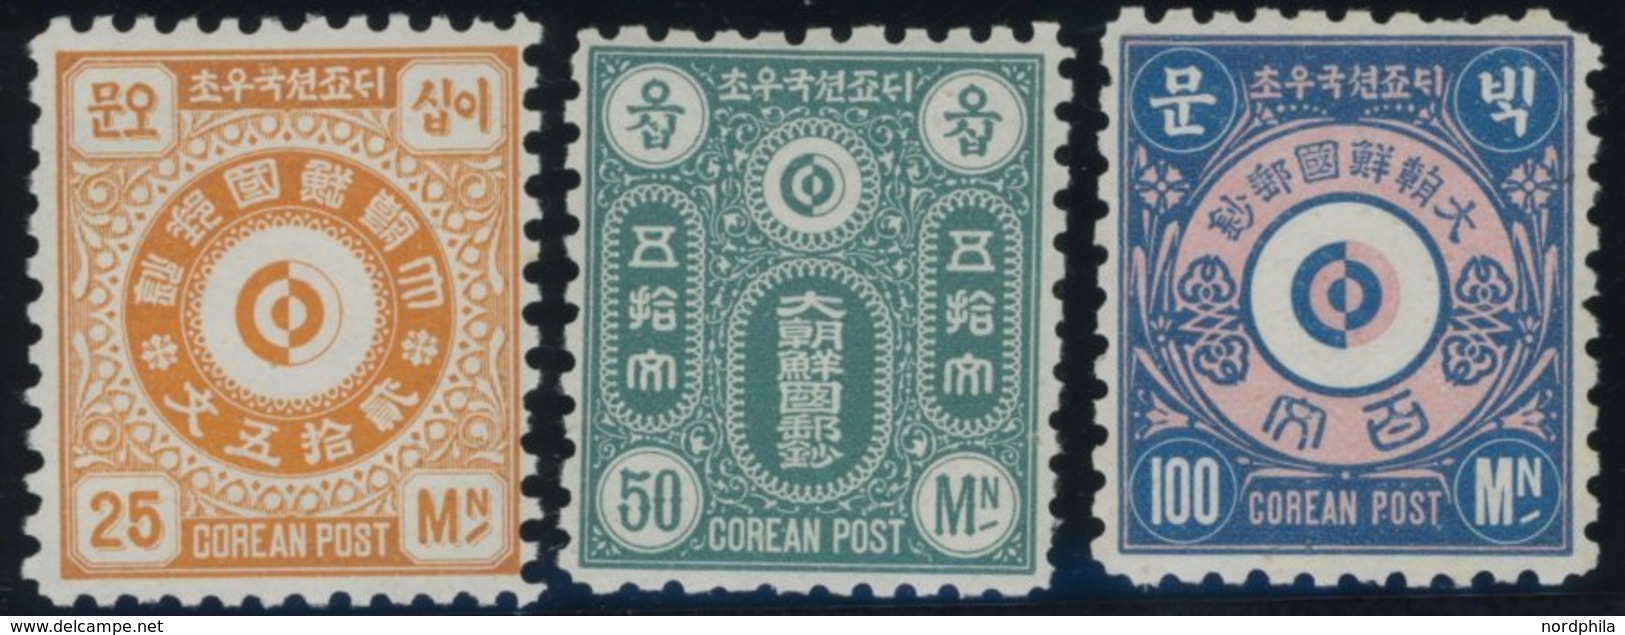 Nicht Ausgegeben: 1884, Stadtpostmarken, Auch Englische Inschrift, Normale Zähnung, 3 Postfrische Werte Pracht -> Automa - Korea (Nord-)